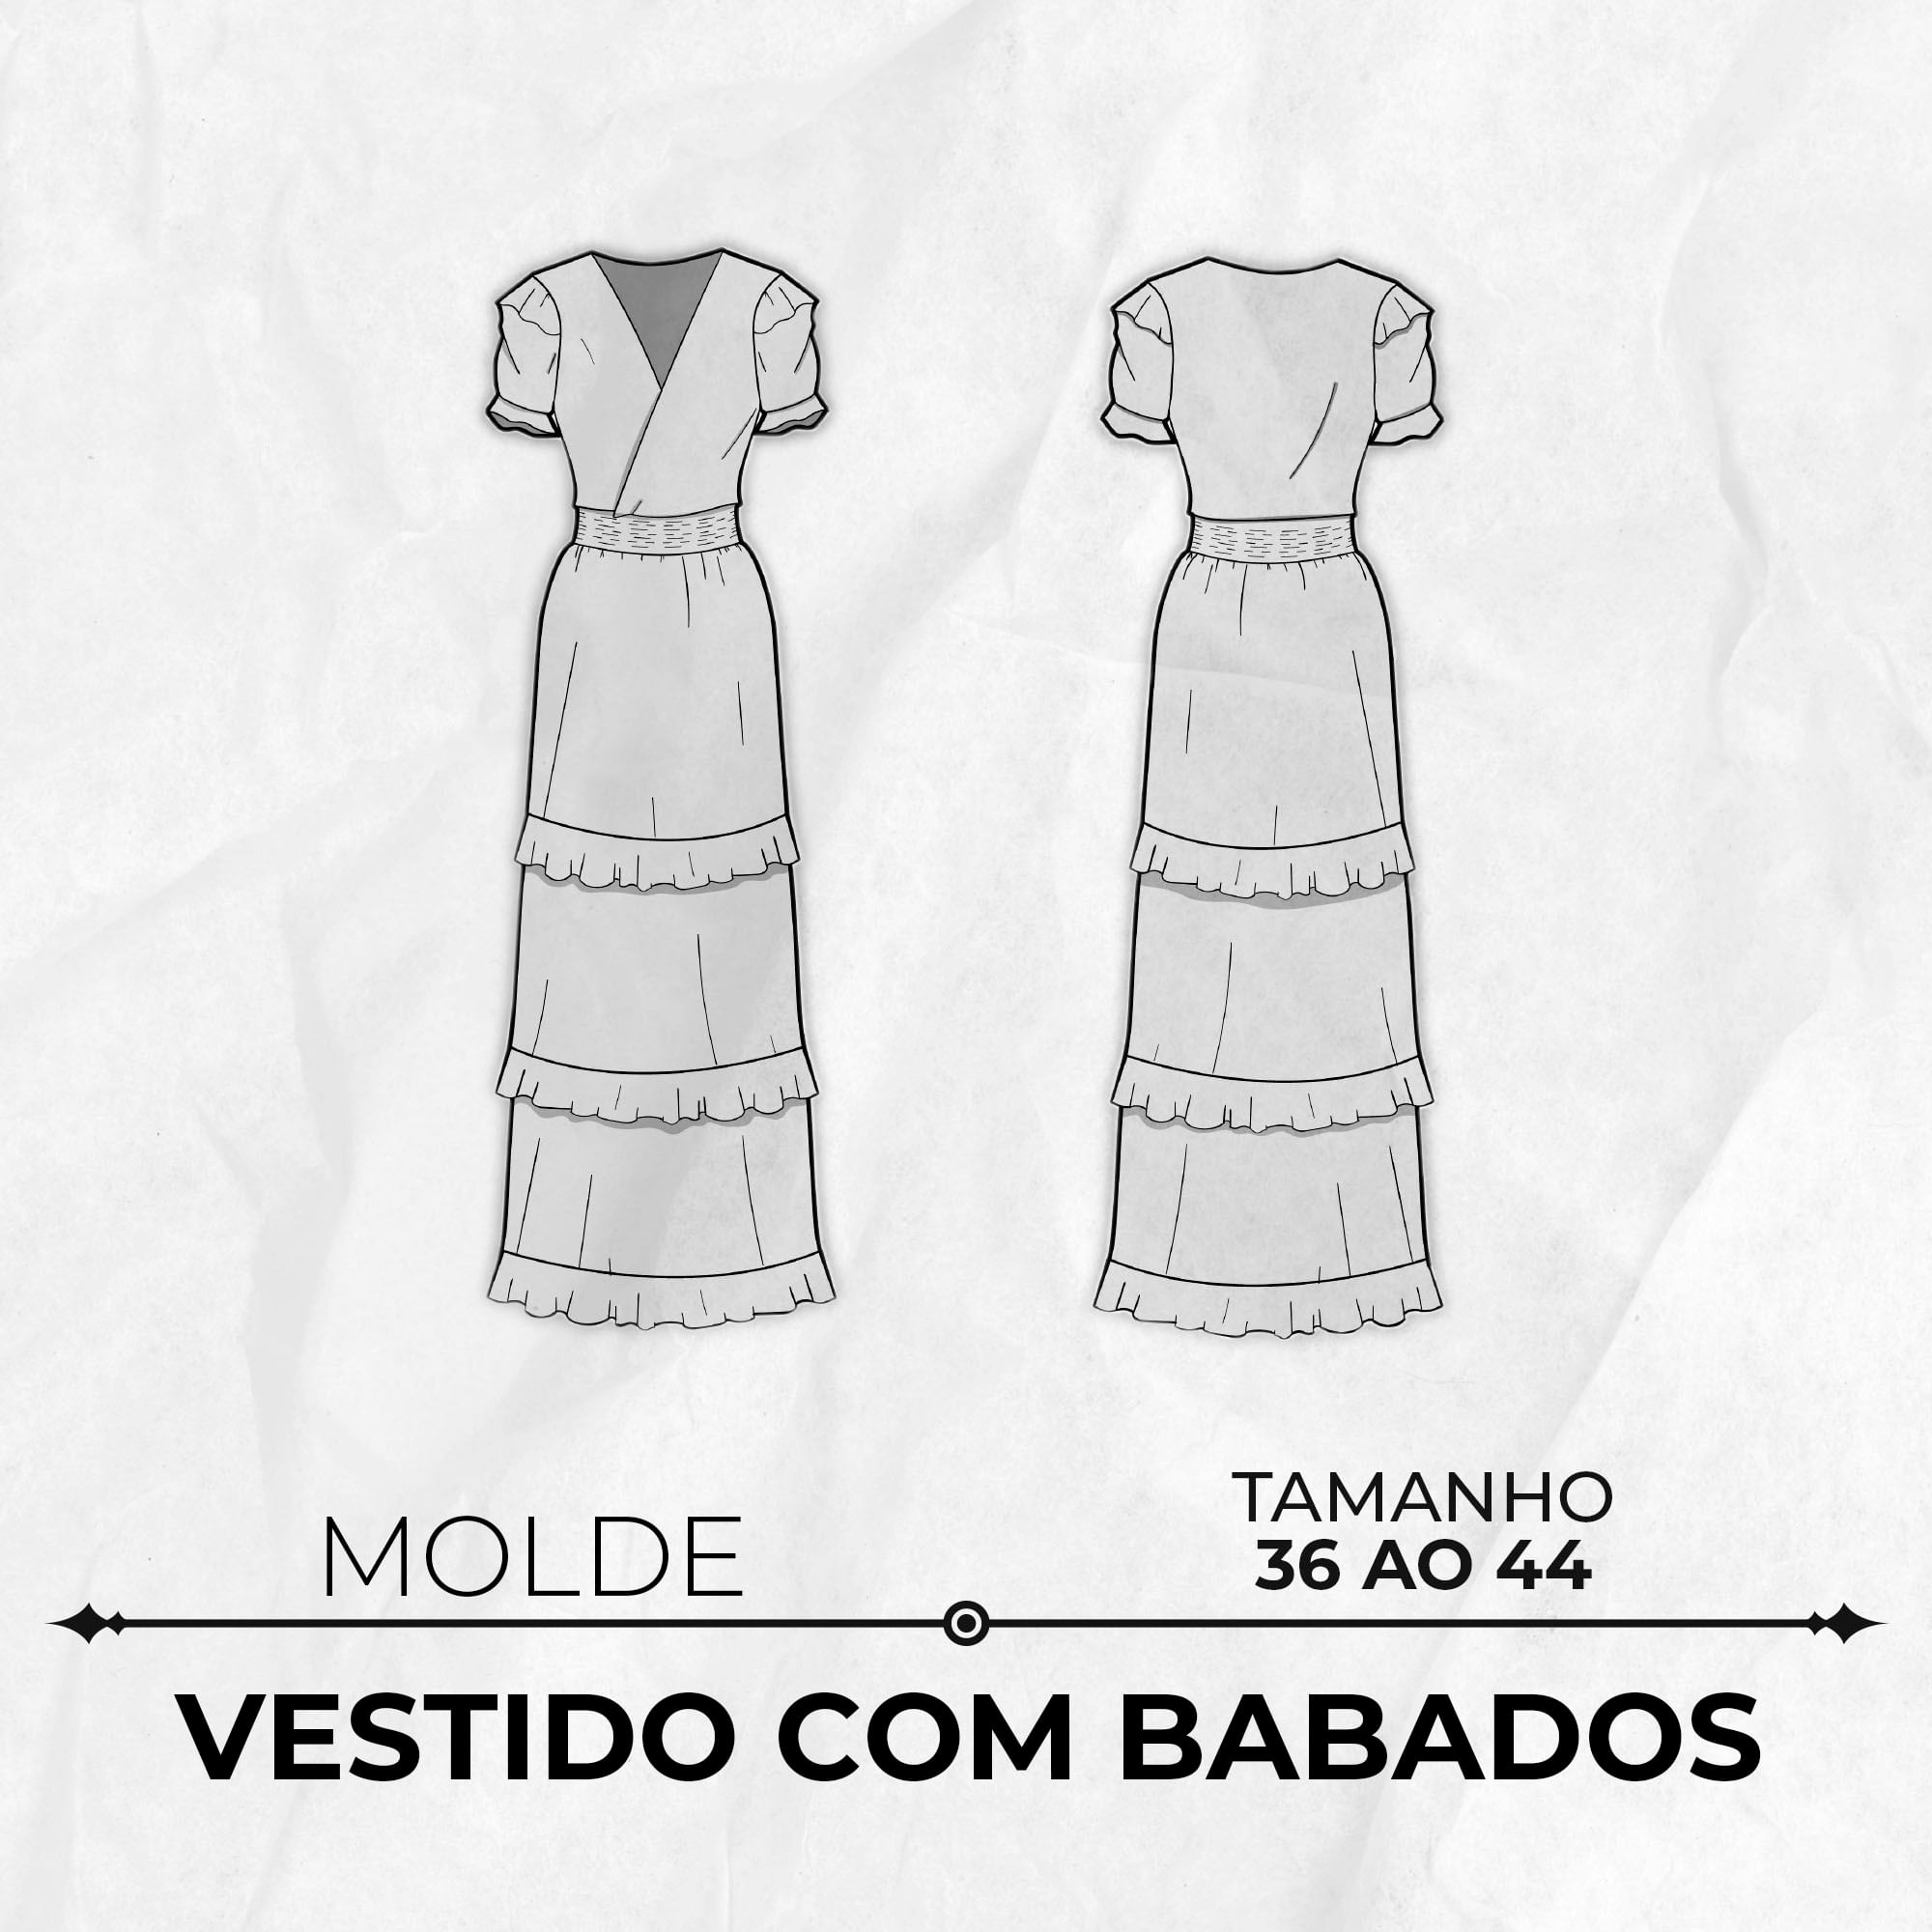 Molde vestido com babado tamanho 36 ao 44 by Wania Machado